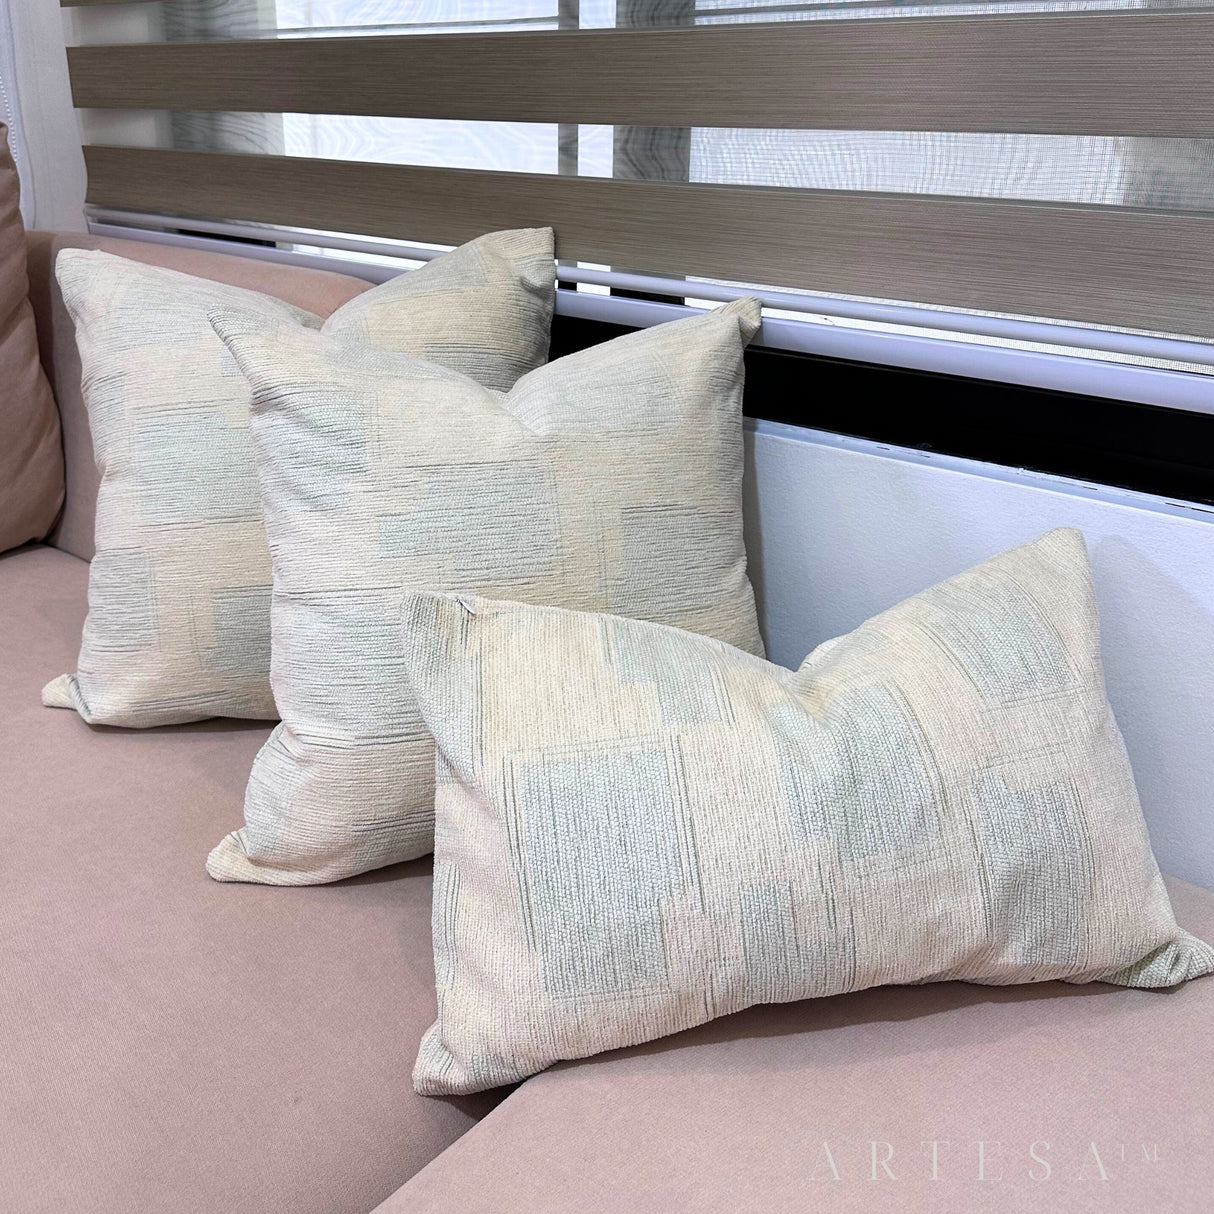 Artesa Perlah Premium Cotton Chanel Throw Pillow Set of 3 - Elegant Home Decor Ensemble